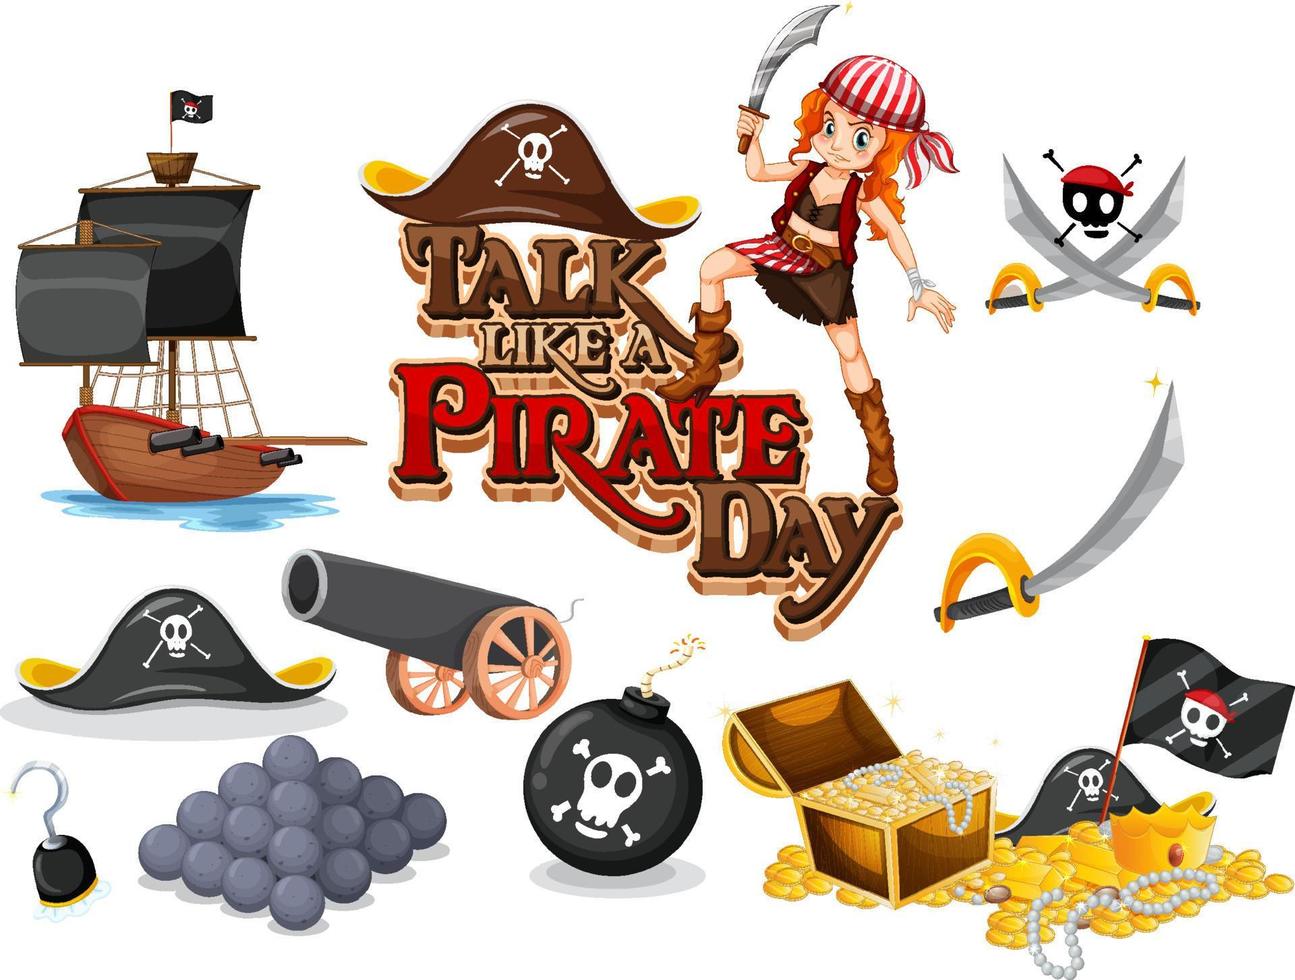 set piraten stripfiguren en objecten vector